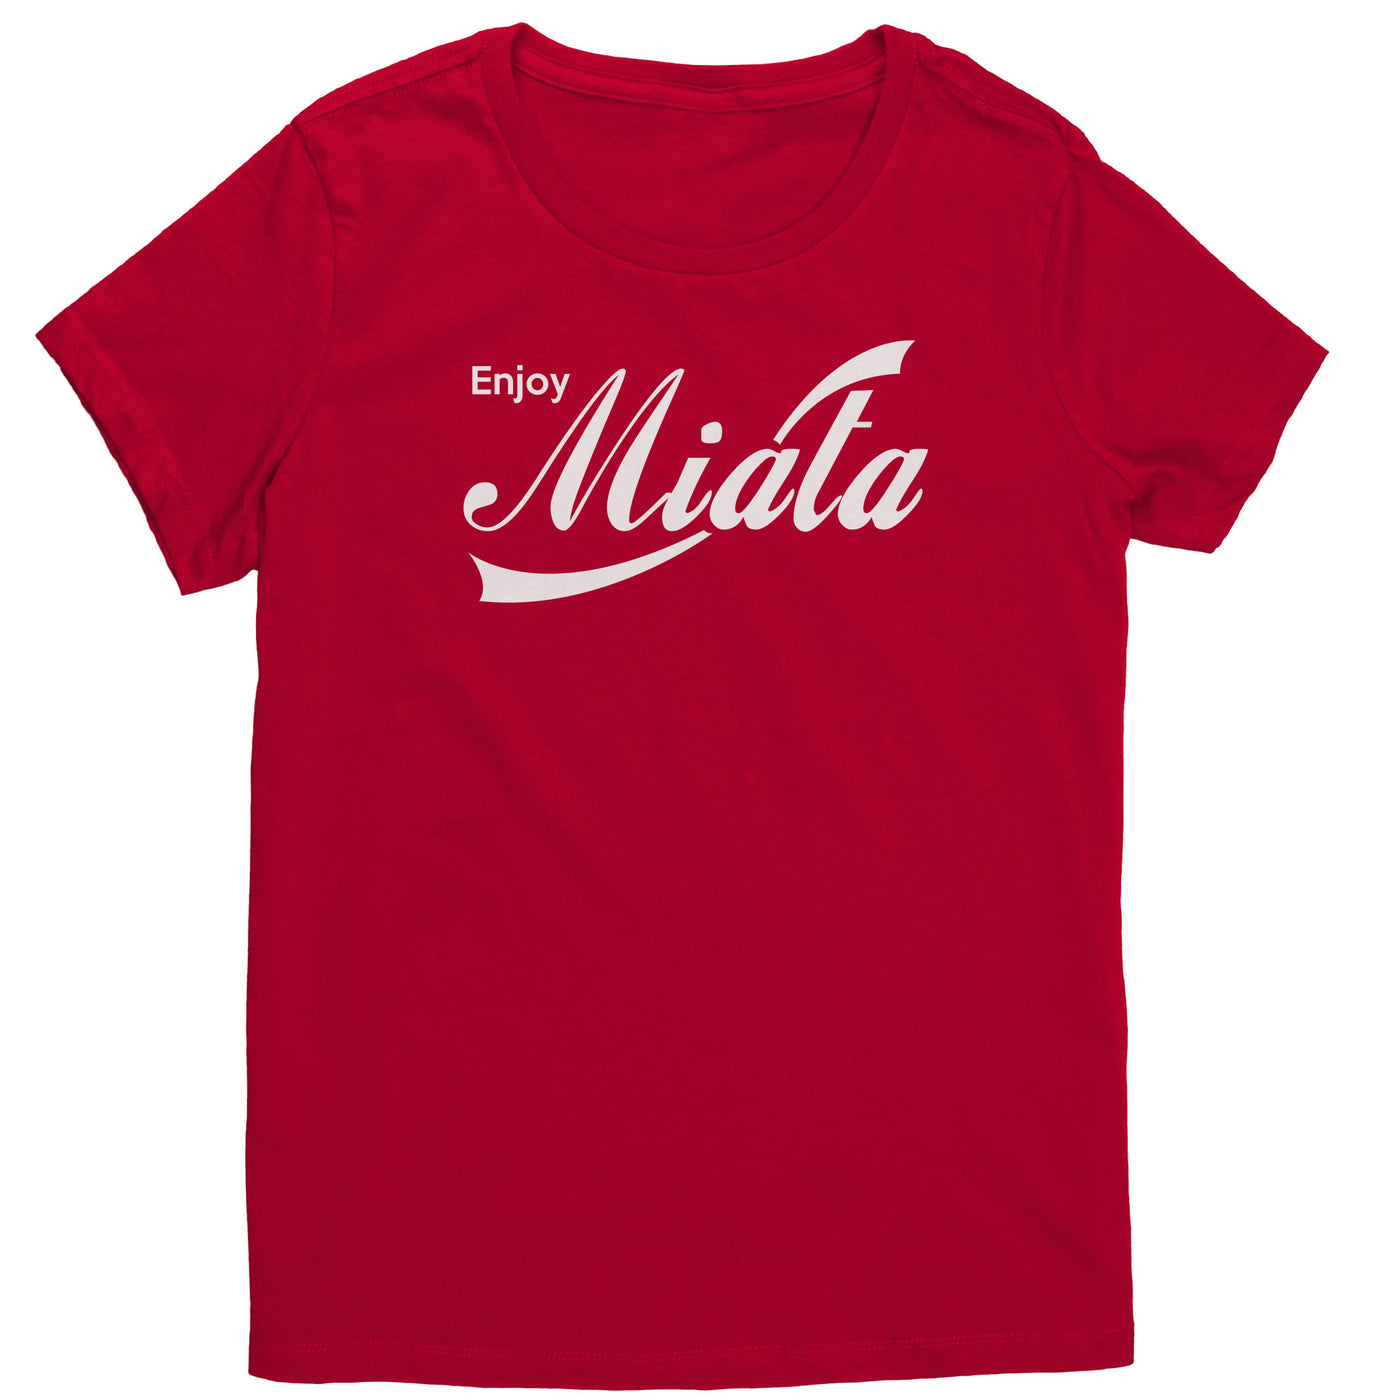 enjoy-miata-womens-shirt-red